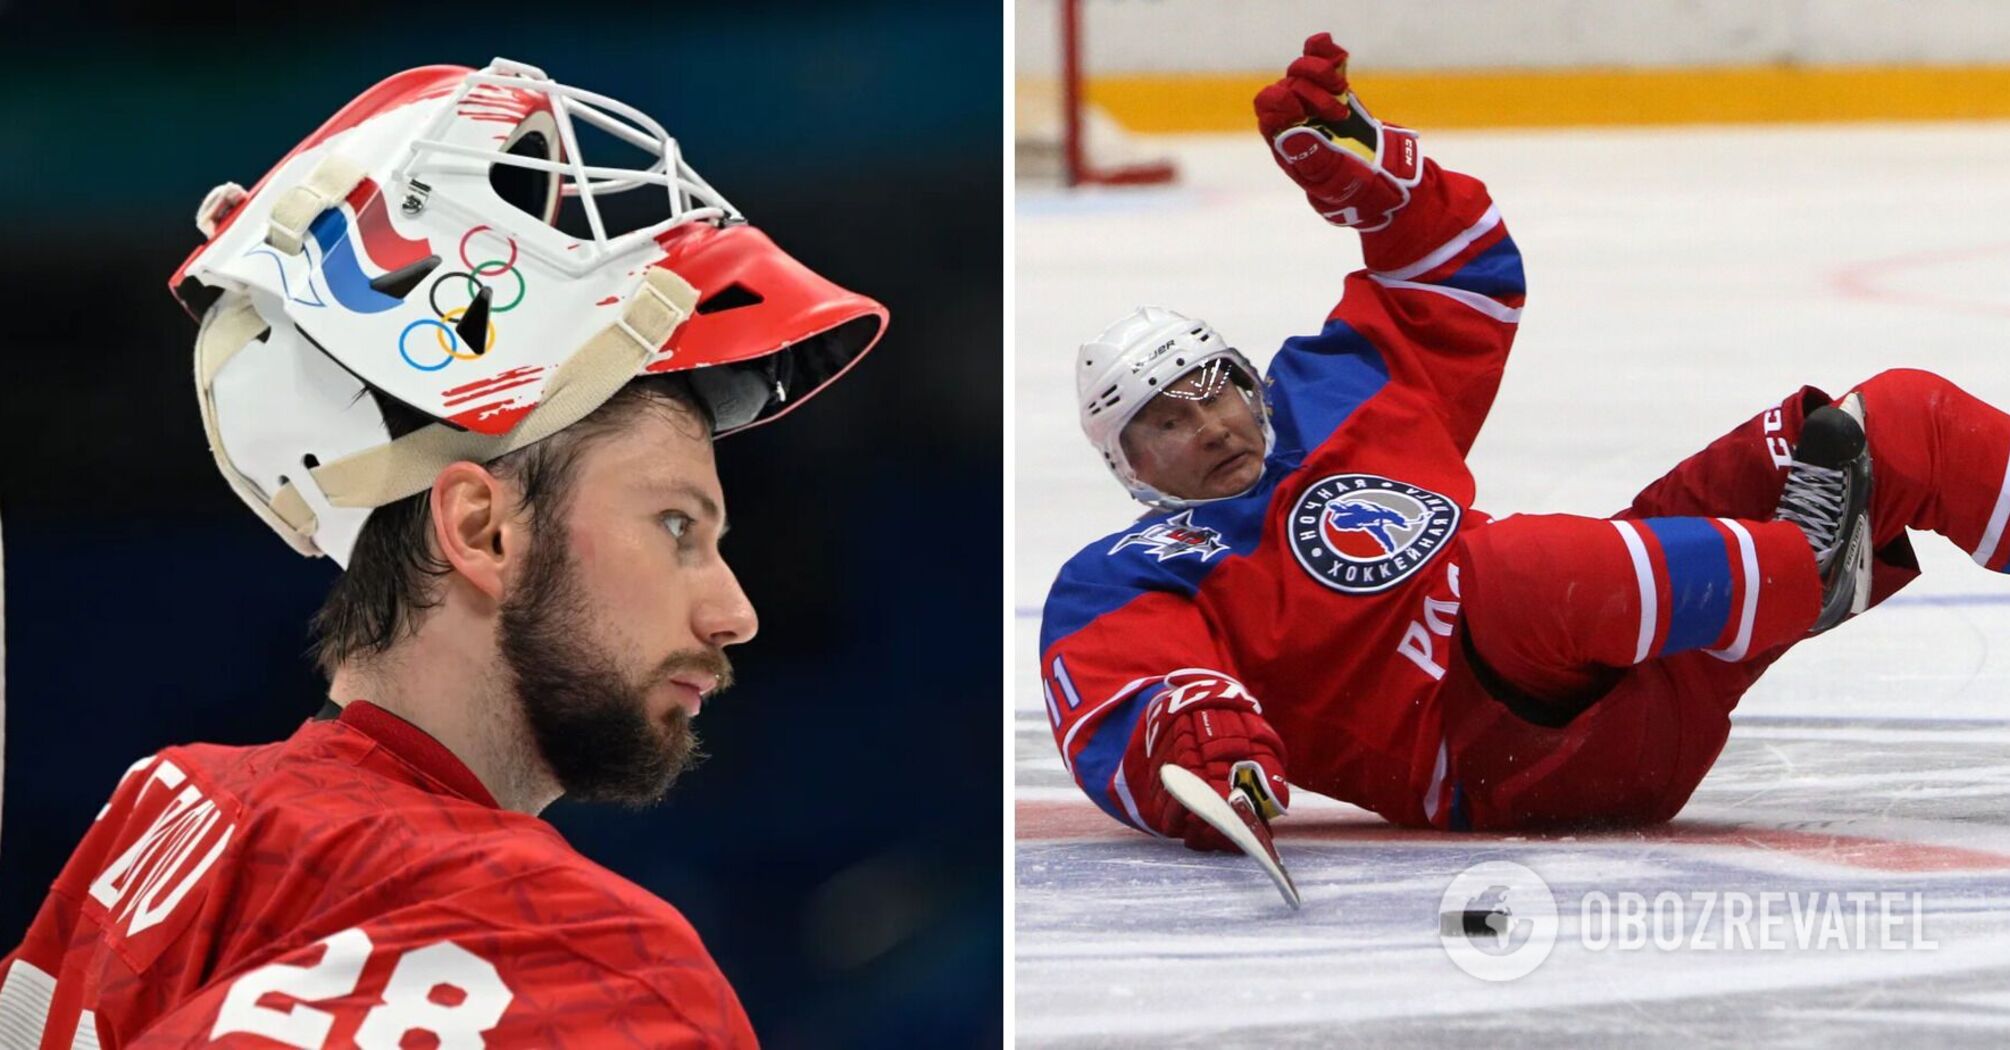 Rosja wywołała głośny skandal w światowym hokeju, ignorując przepisy.